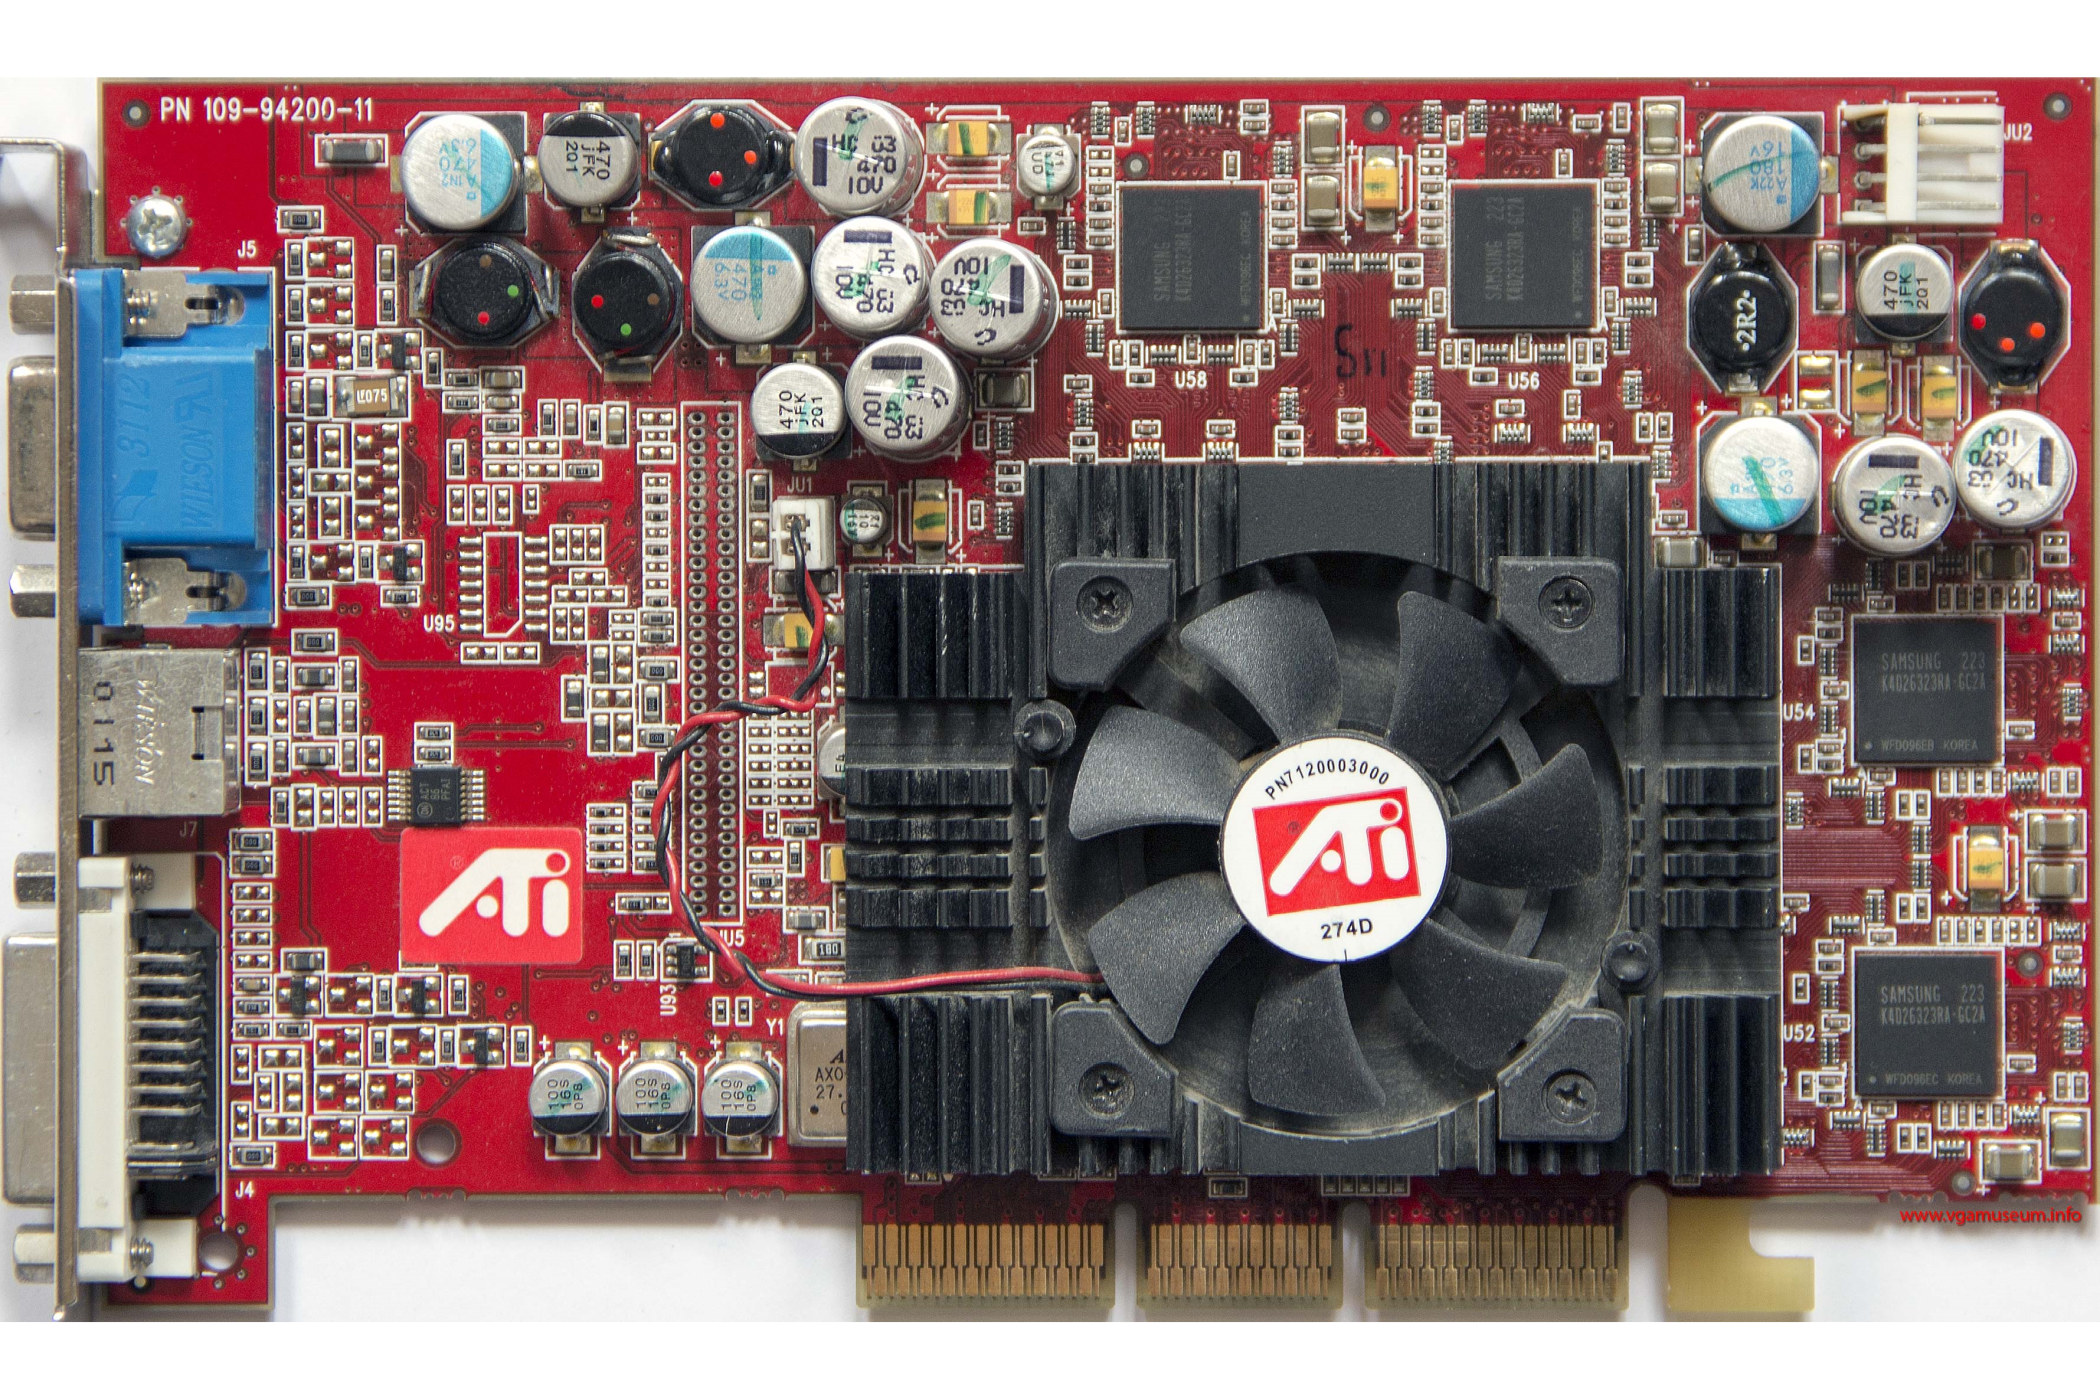 The ATI Radeon 9700 Pro GPU.